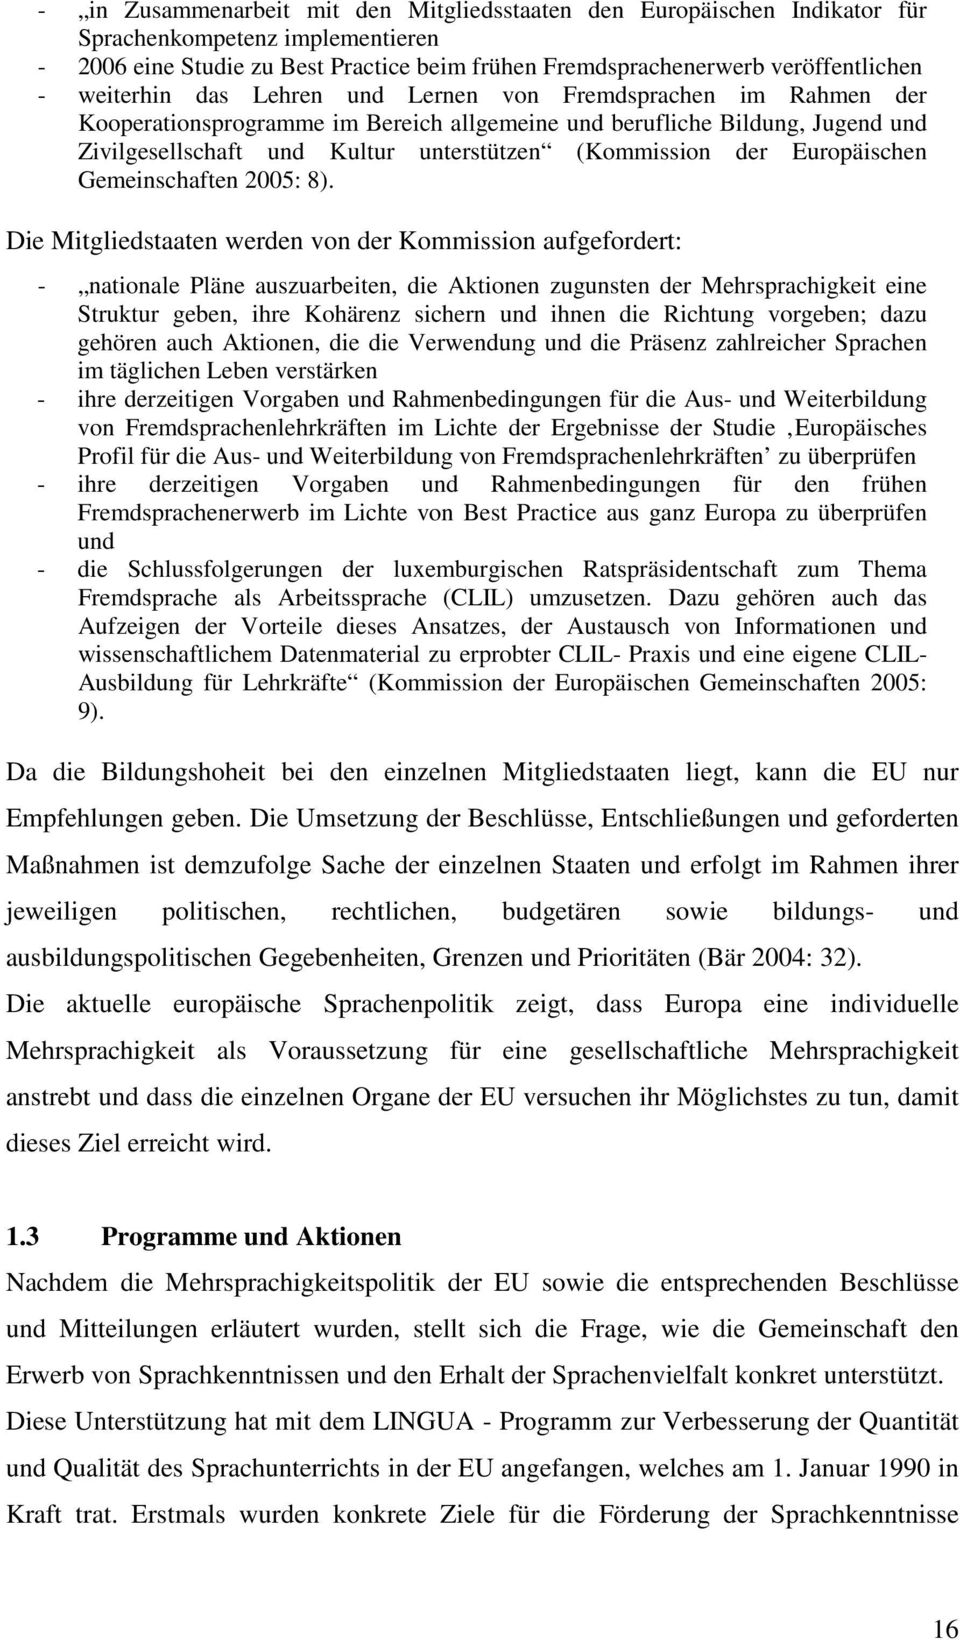 der Europäischen Gemeinschaften 2005: 8).